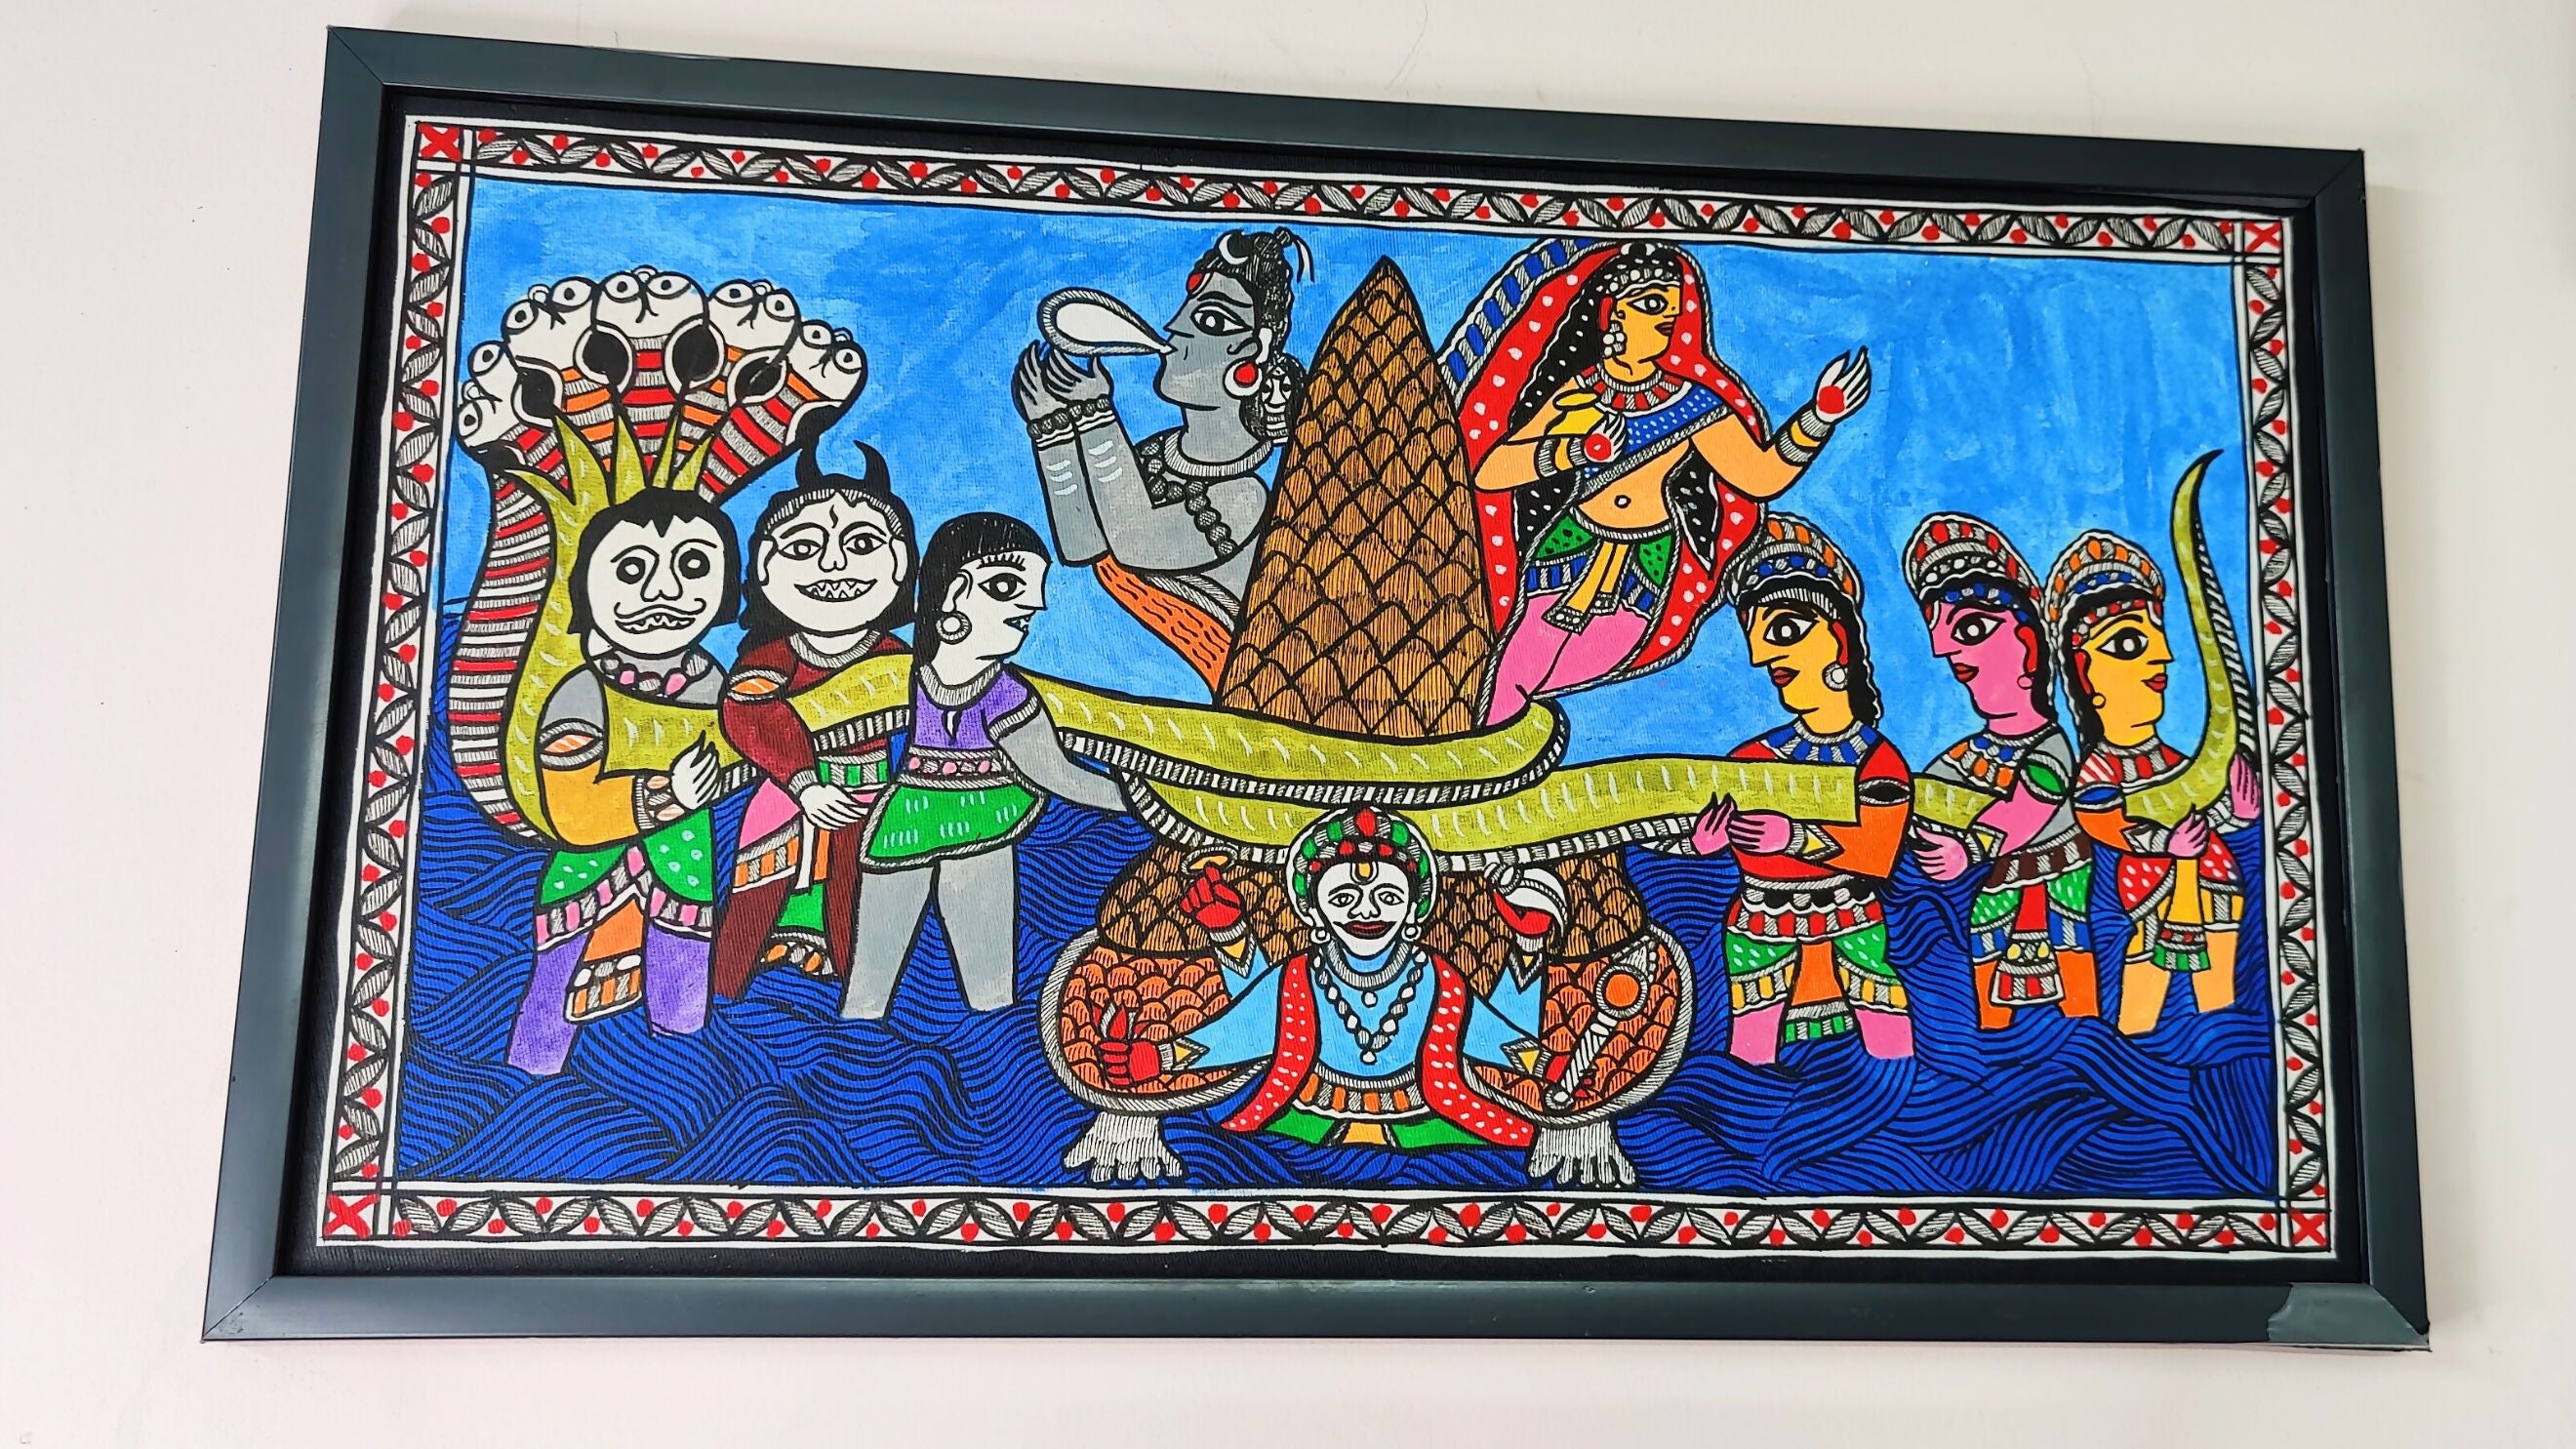 Oceanic Harmony: Madhubani Masterpiece of "Samudra Manthan"